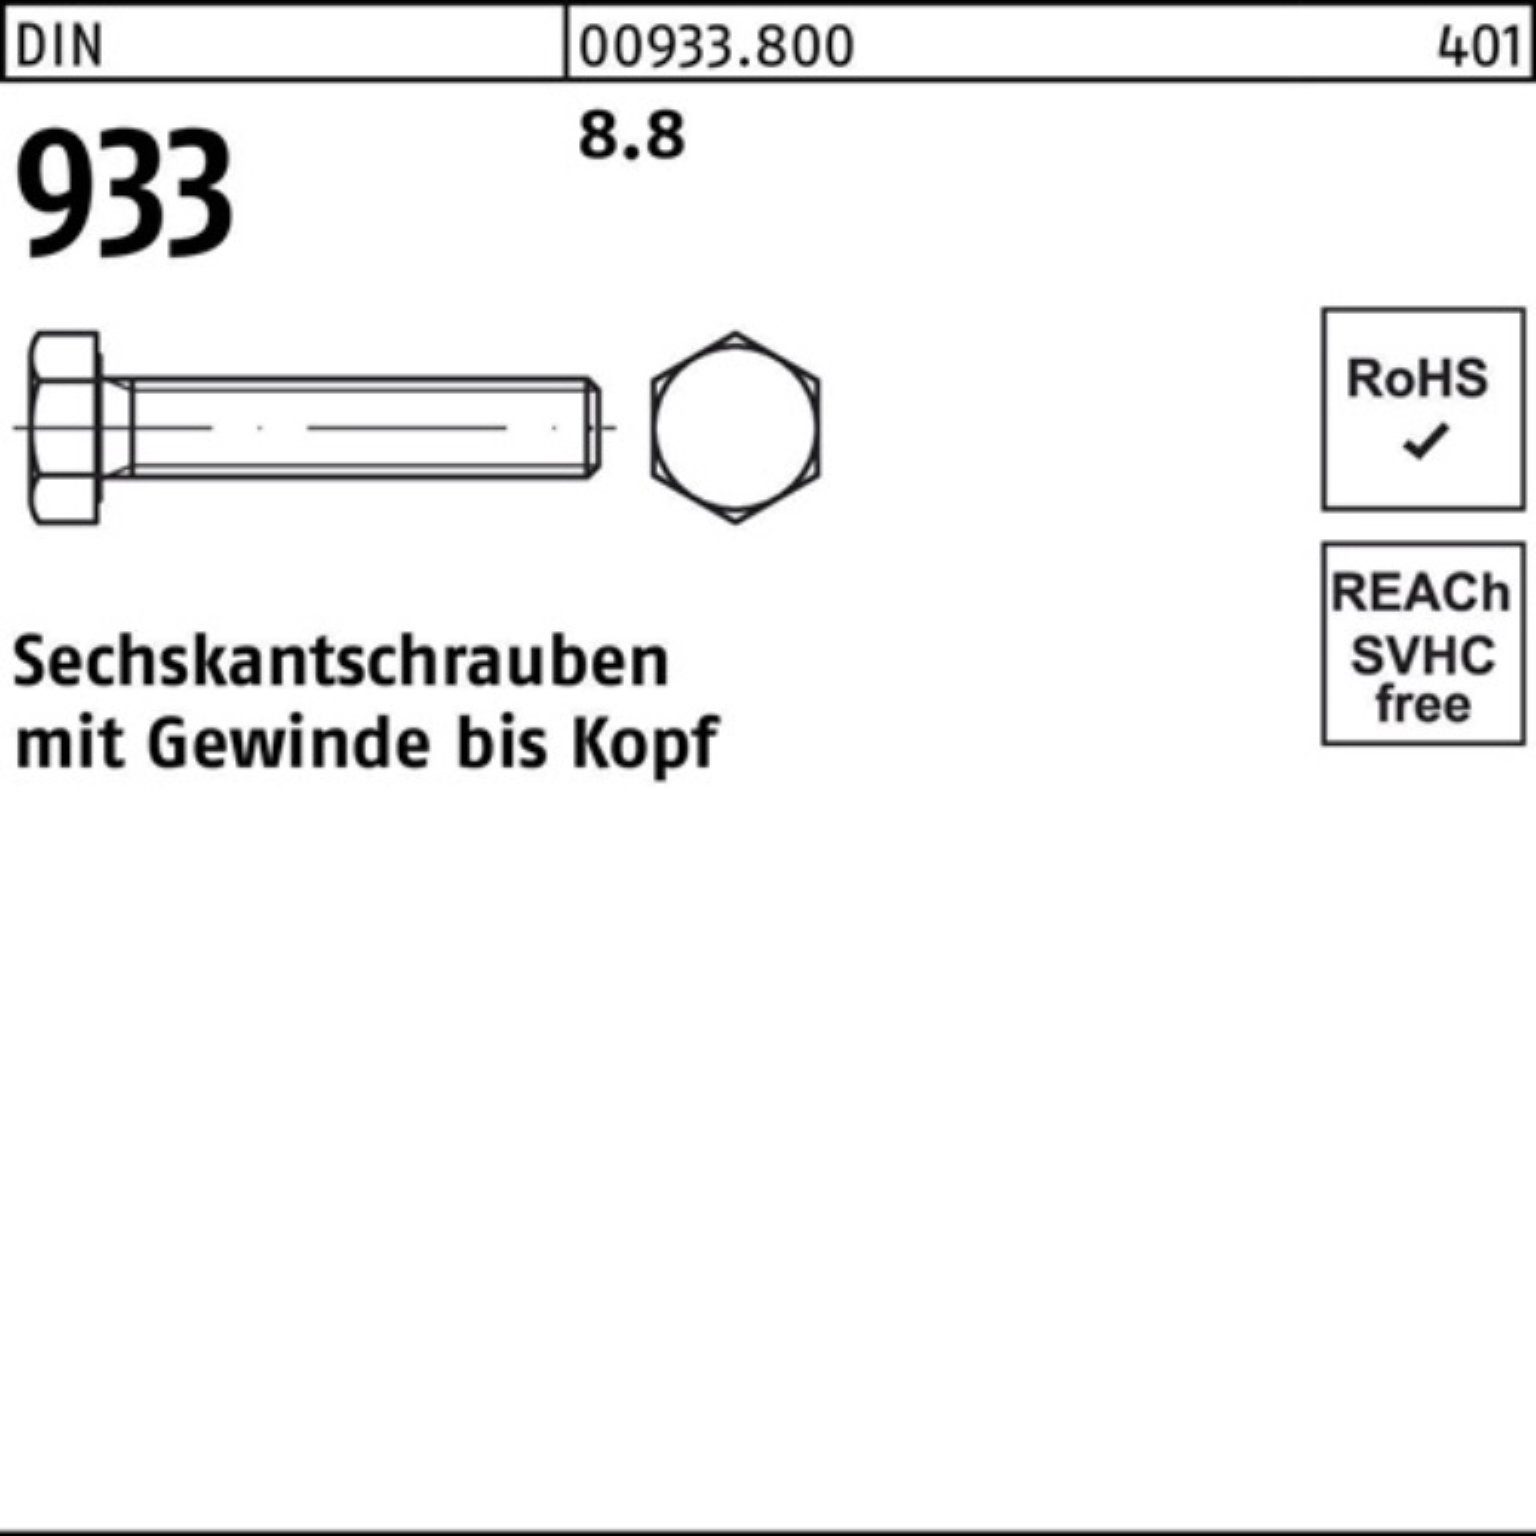 Stück Pack Sechskantschraube 200er 933 933 DIN VG DIN M6x 200 Reyher 8.8 35 Sechskantschraube